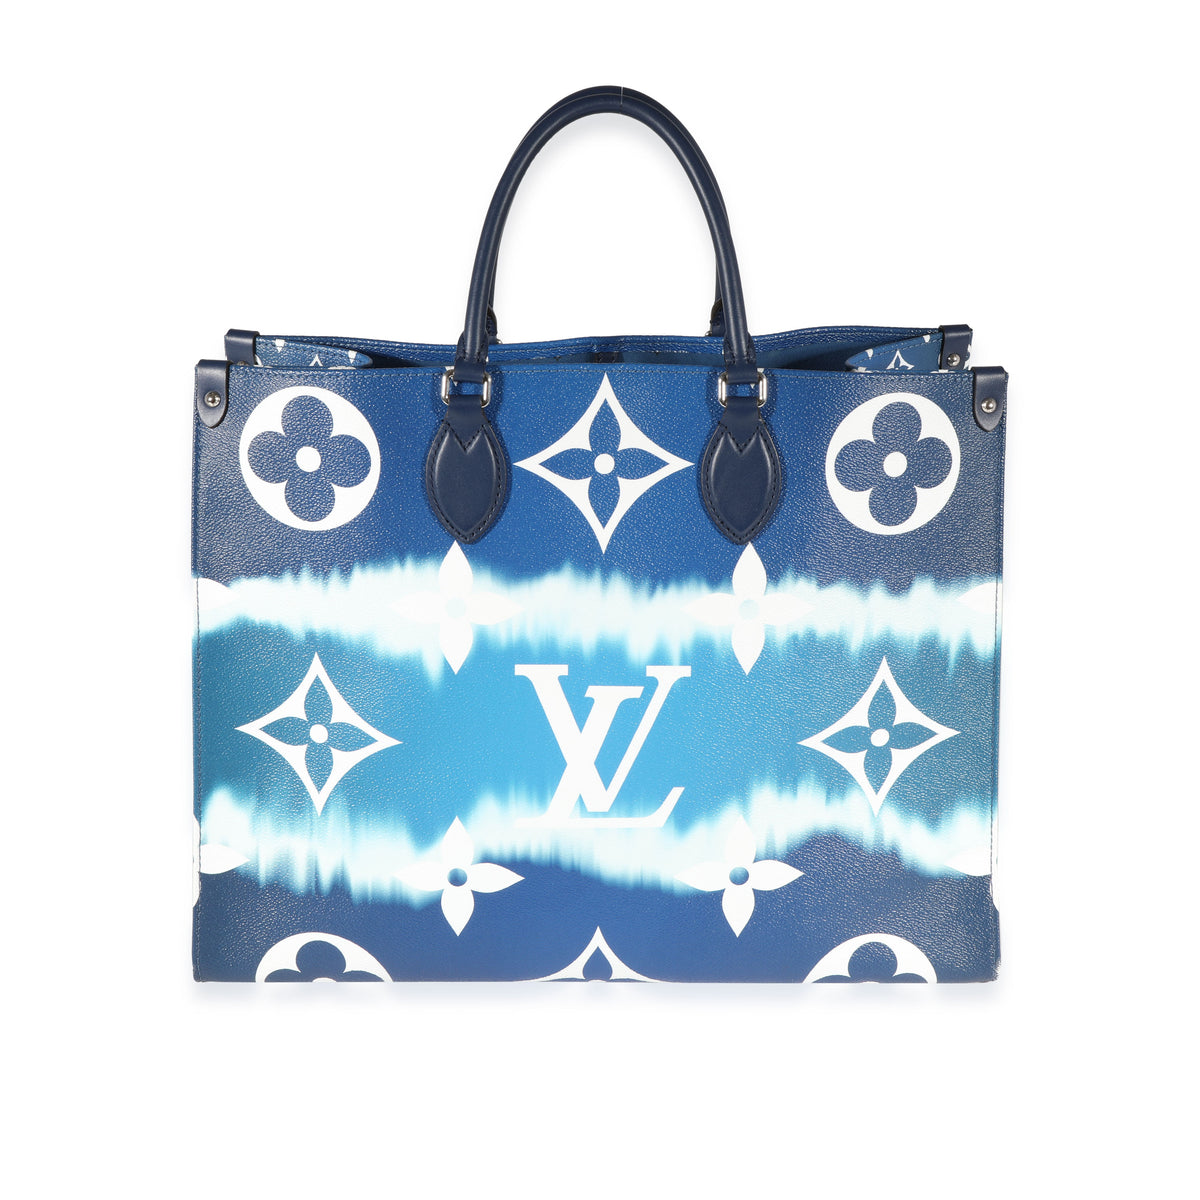 Louis Vuitton Onthego LV Escale GM Bleu